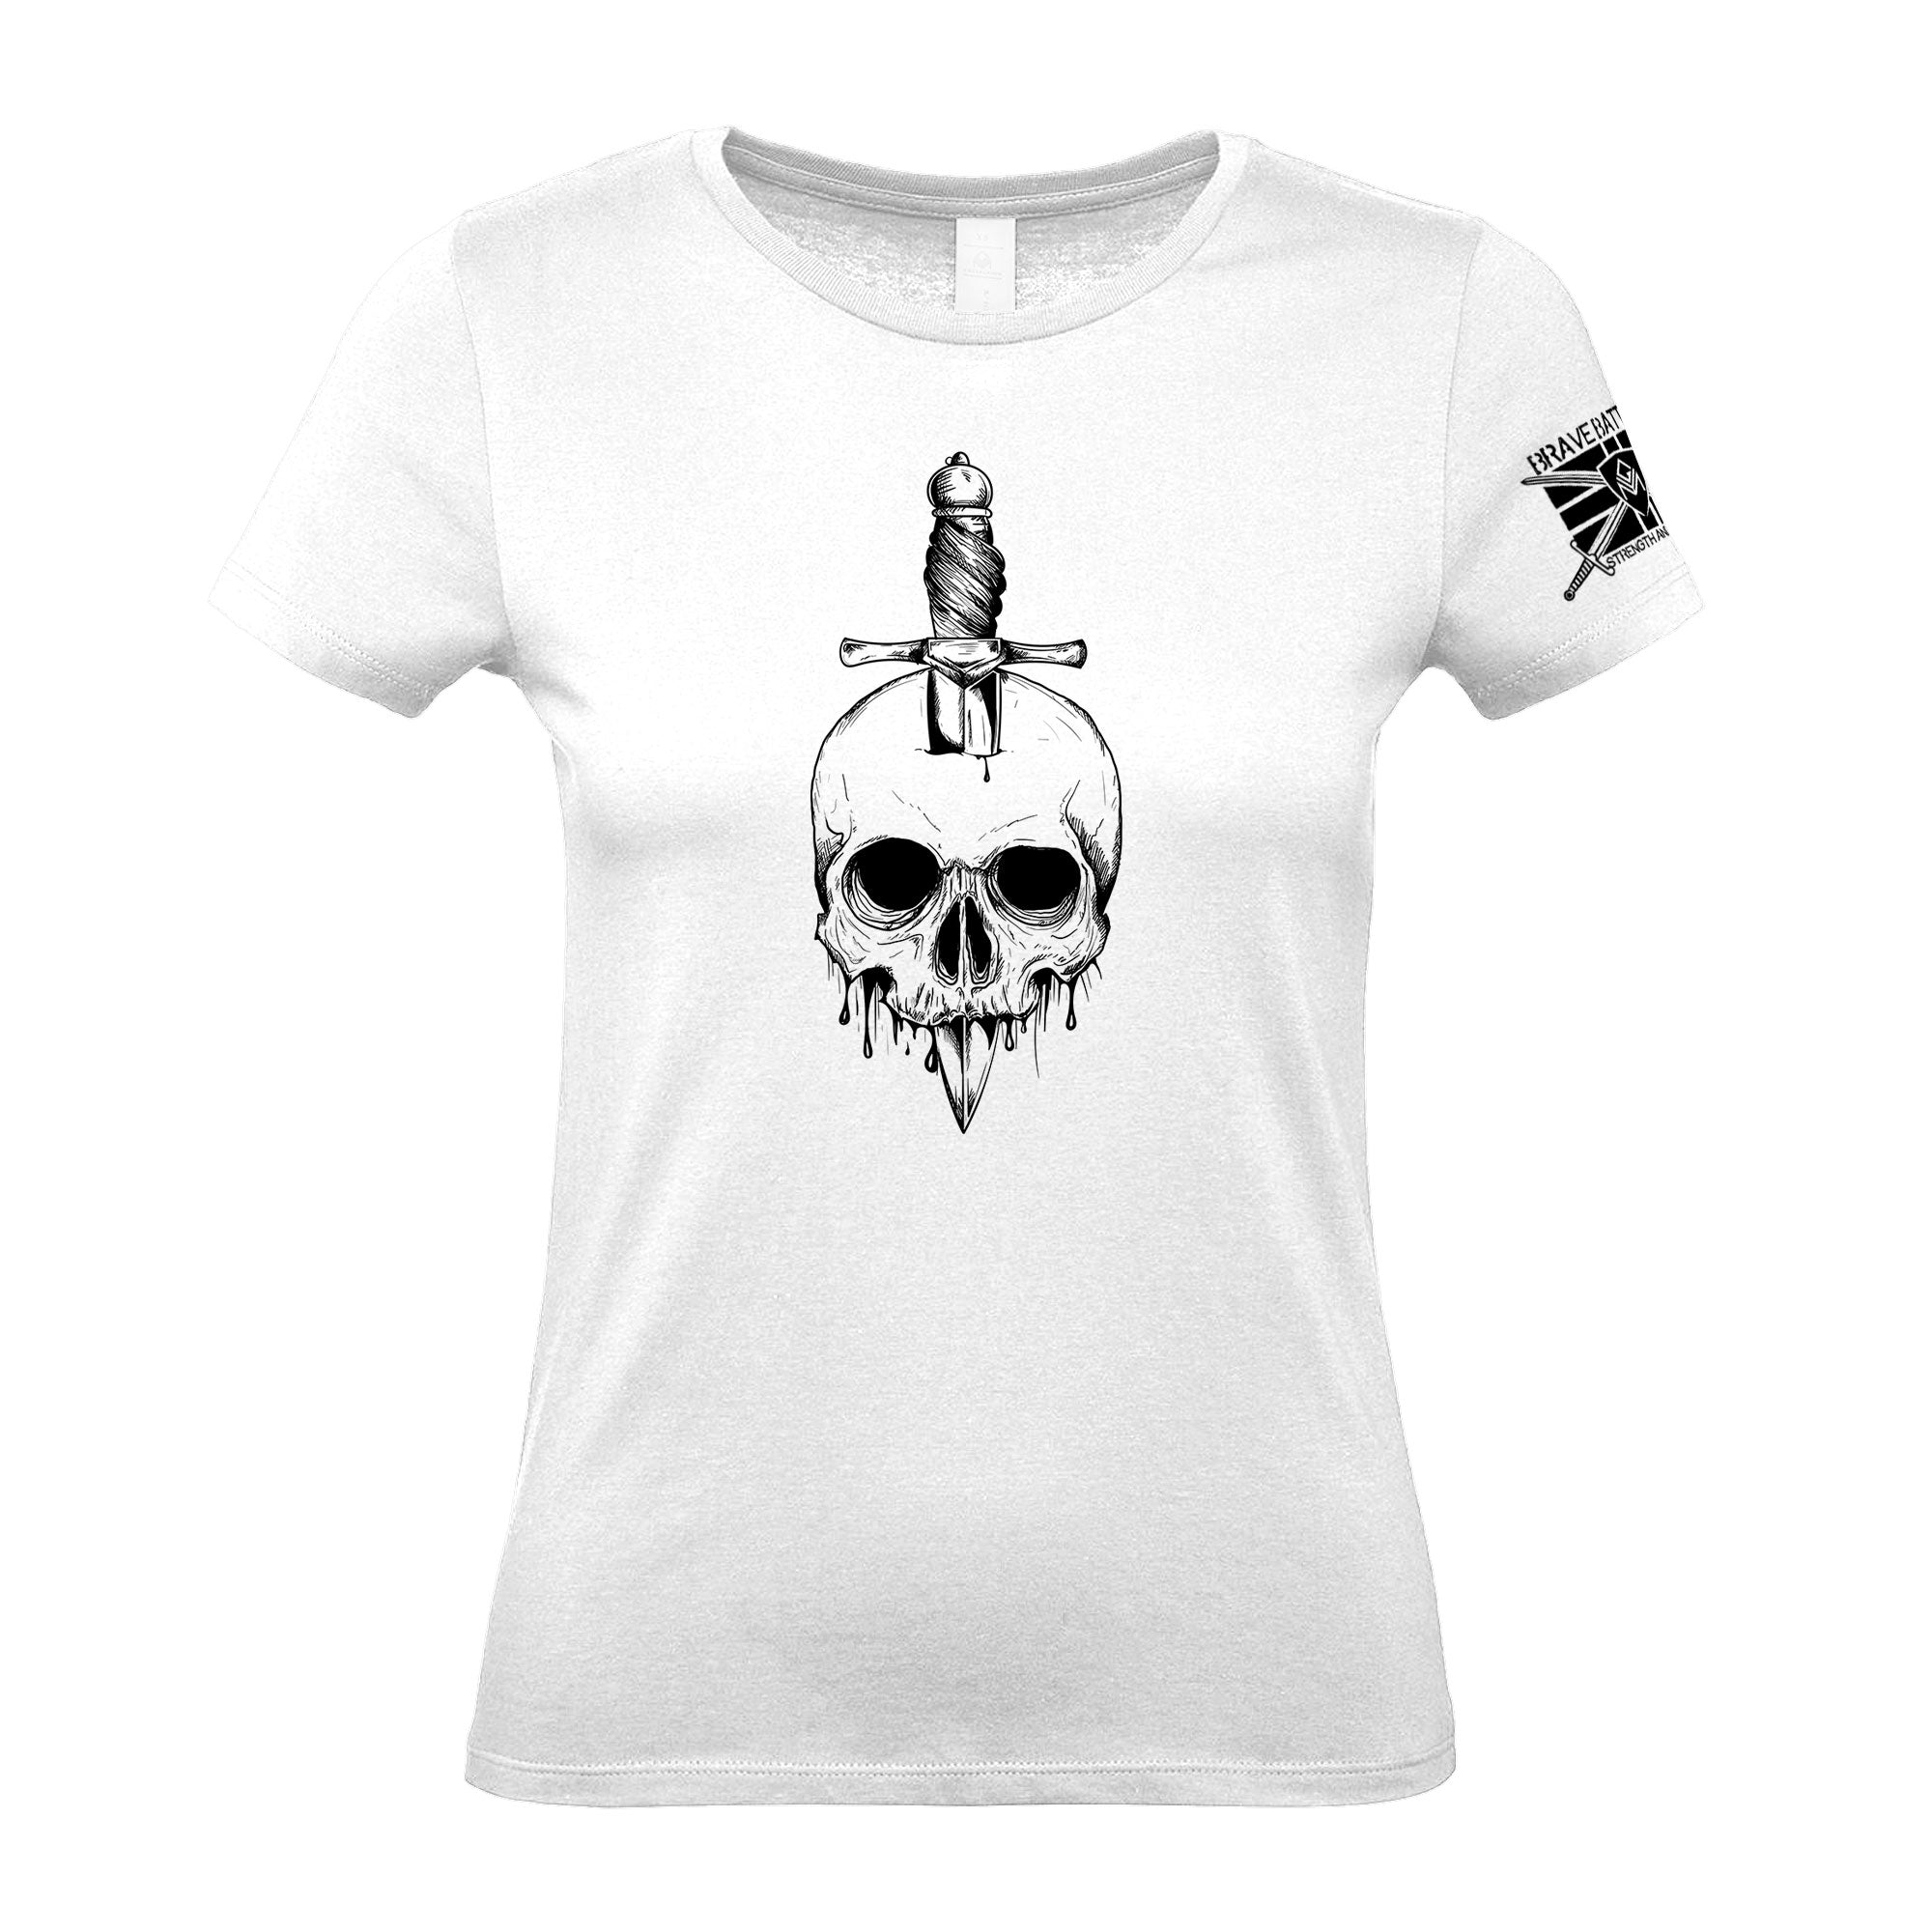 Skull Knife - Women's Gym T-Shirt